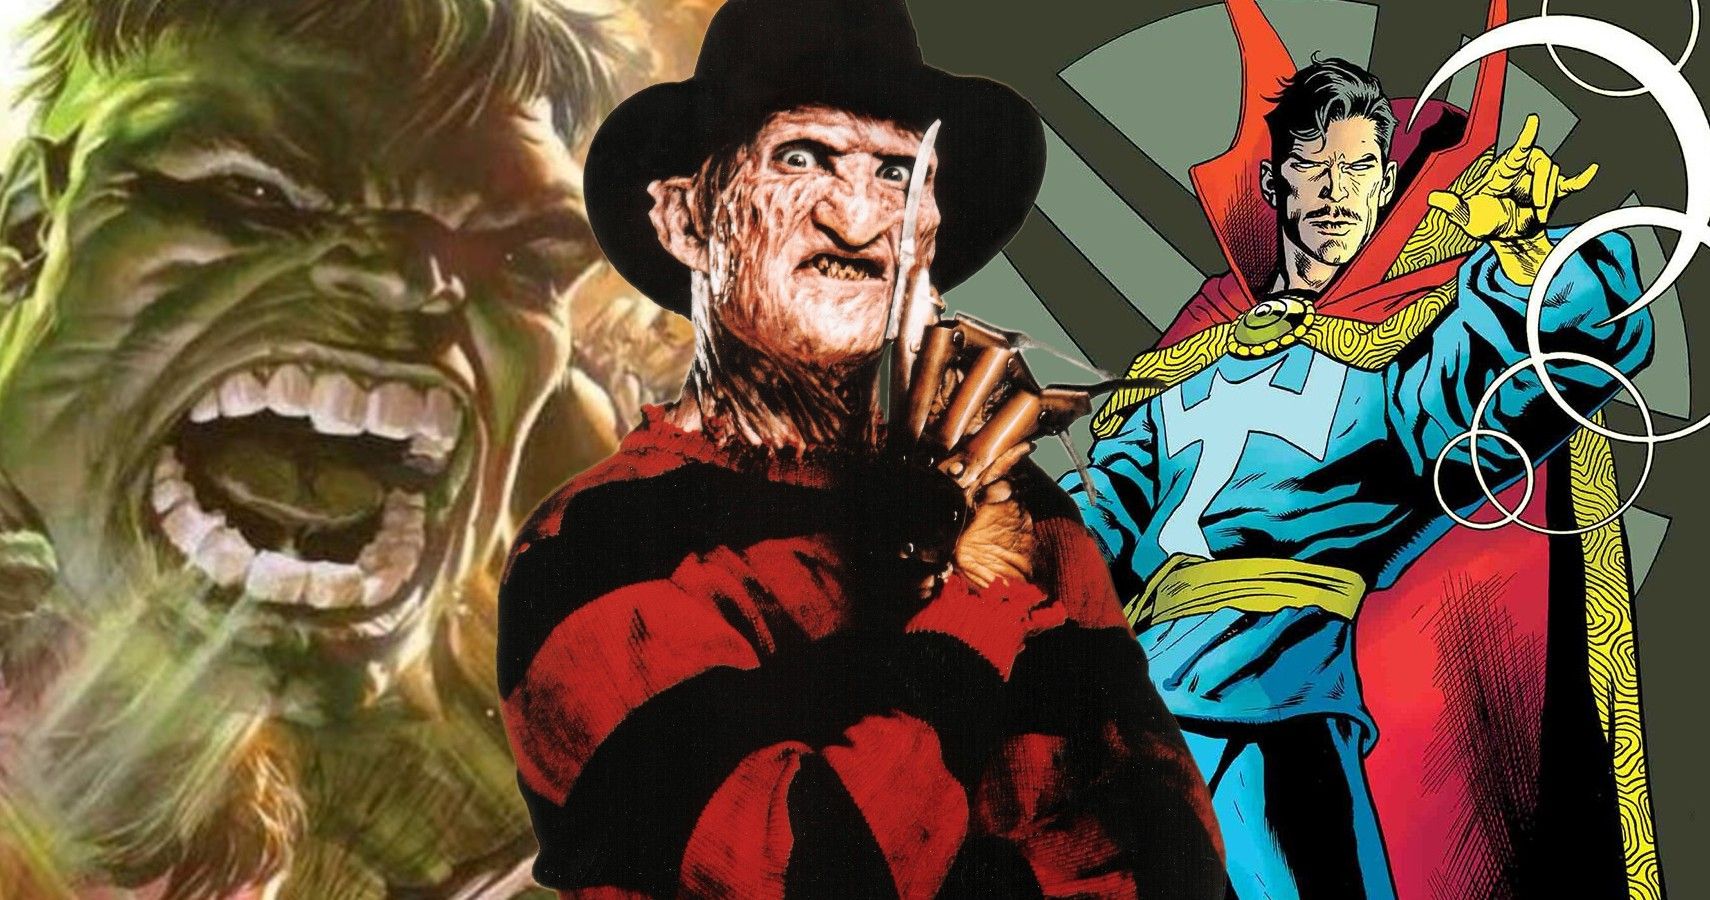 Hulk Freddy Krueger and Doctor Strange in Marvel vs Nightmare on Elm Street